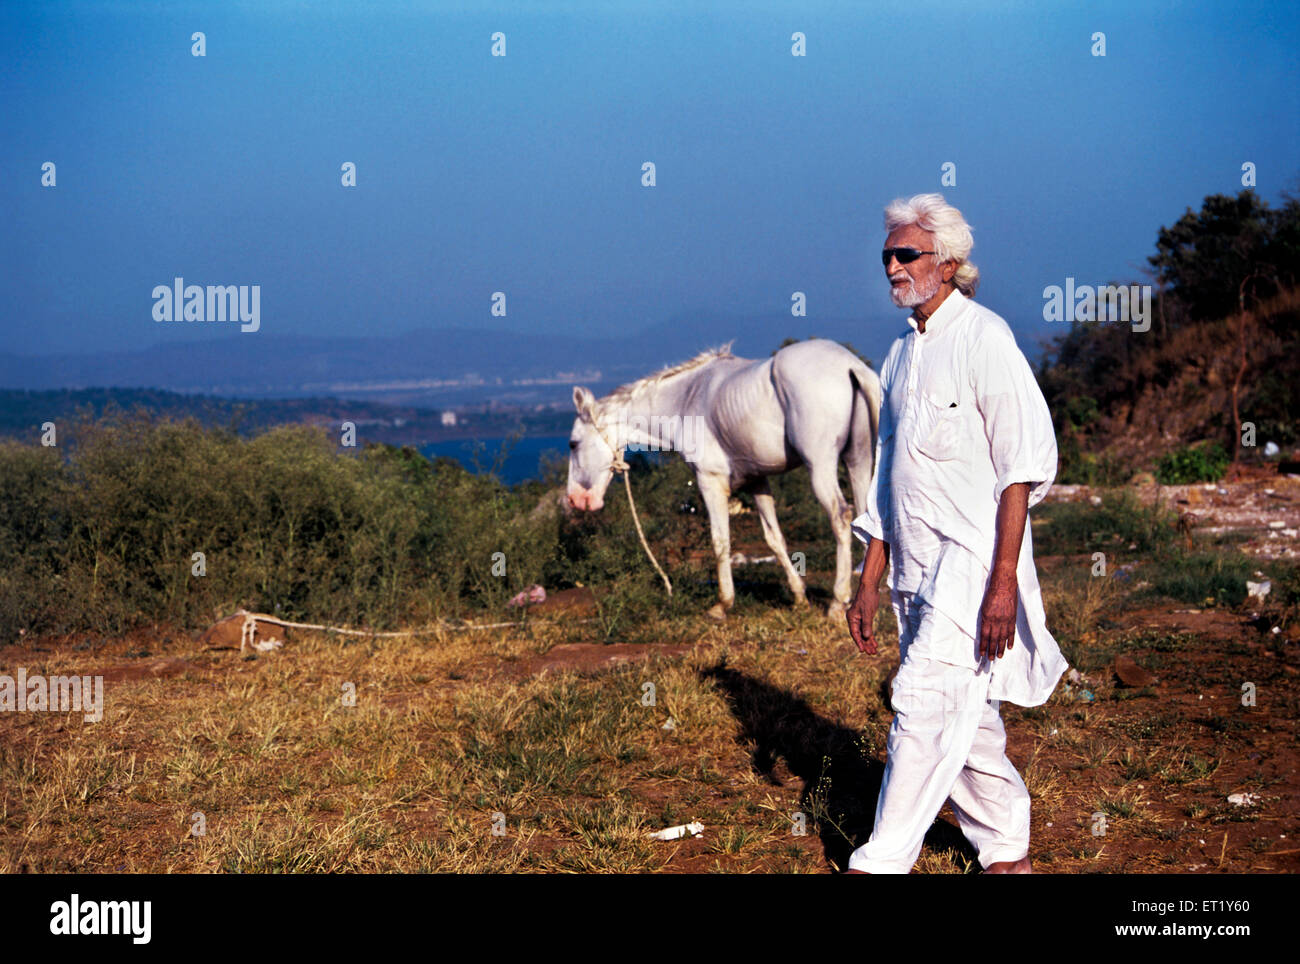 M F Husain schlendern barfuß am Set von autobiographischen Film Pandharpur ka Ladka Indien Asien Stockfoto